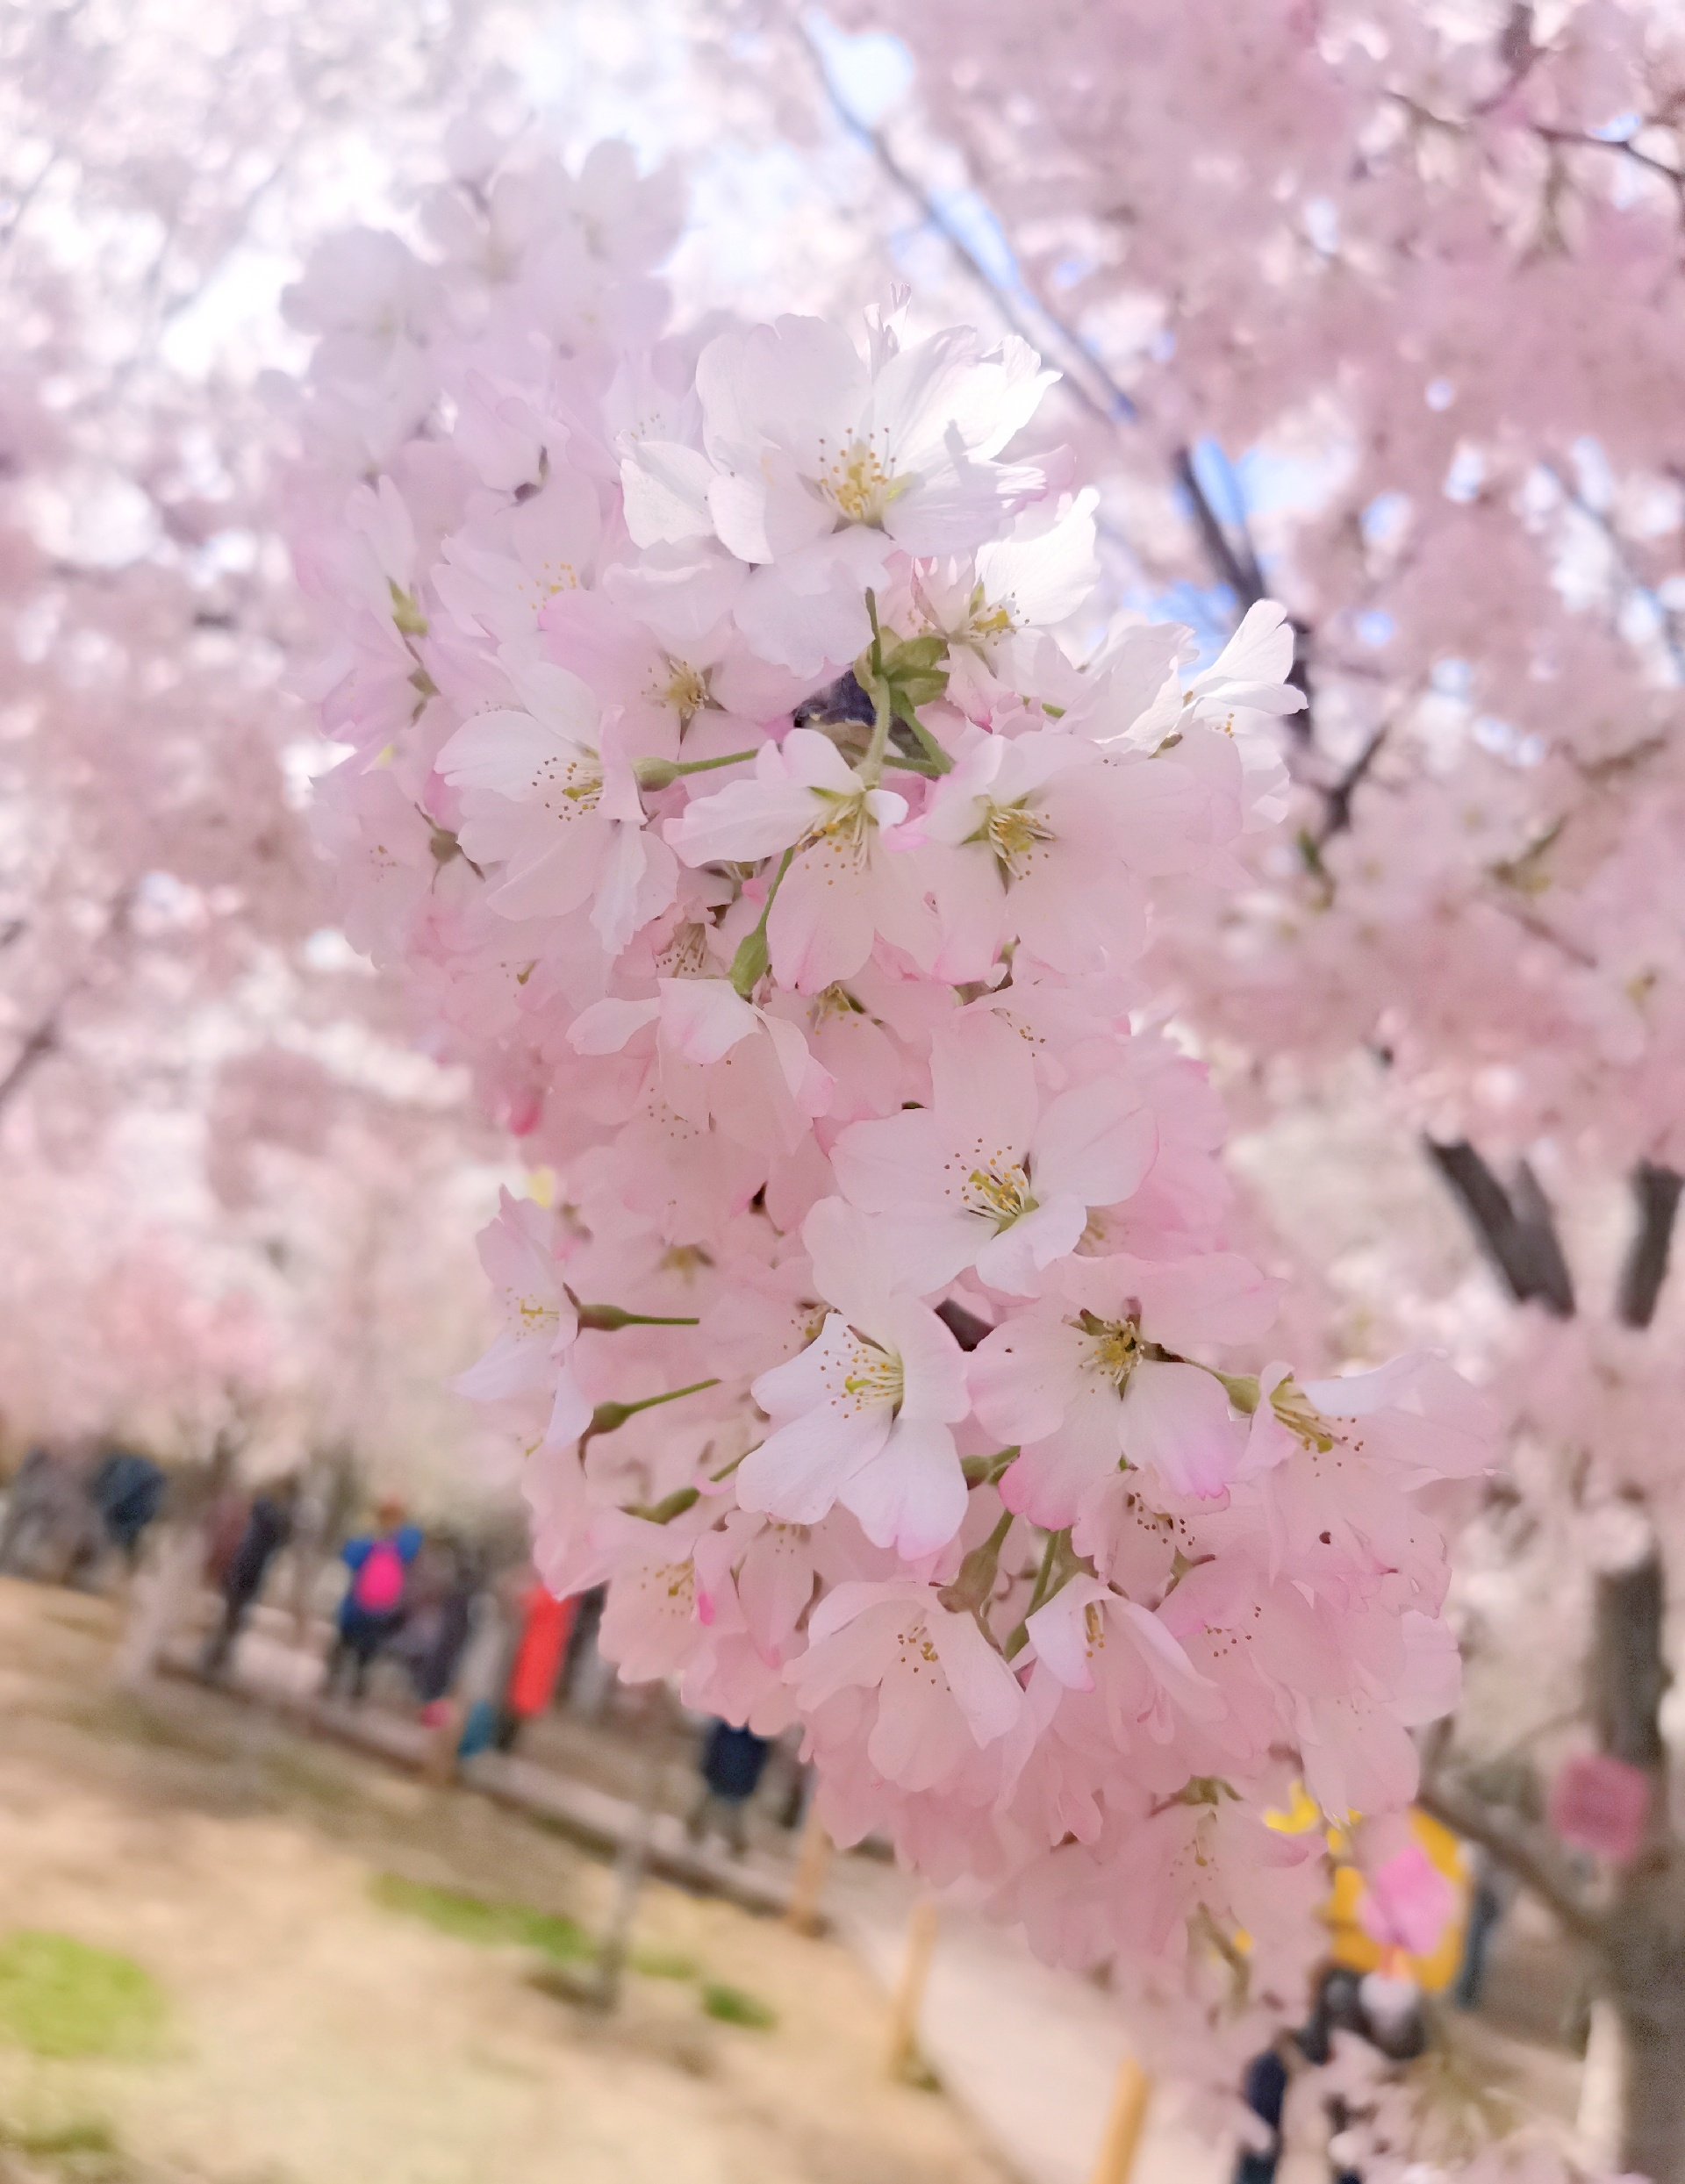 待君有余暇 ，看春赏樱花。去玉渊潭感受一下园内浪漫樱花的美好氛围